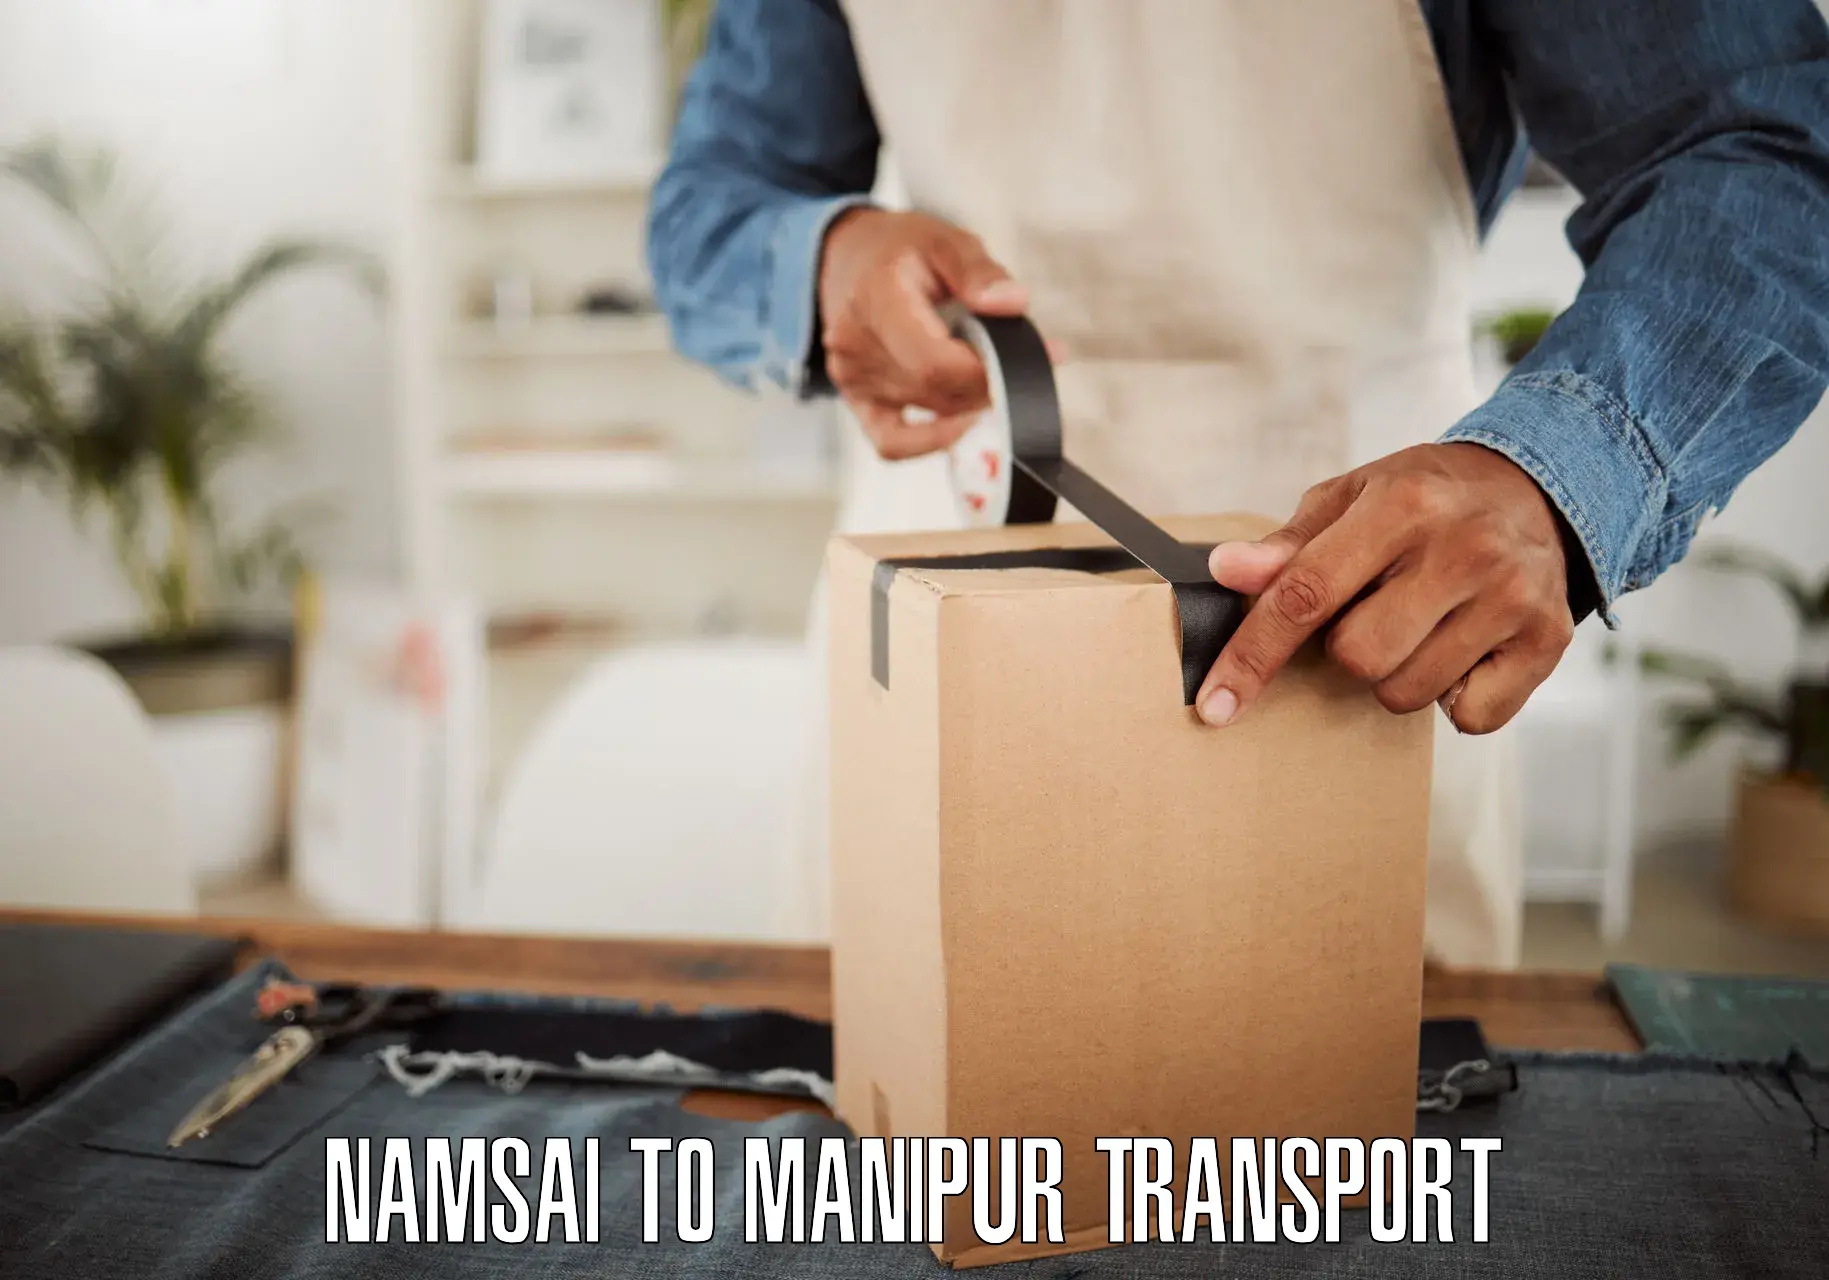 Furniture transport service Namsai to Manipur